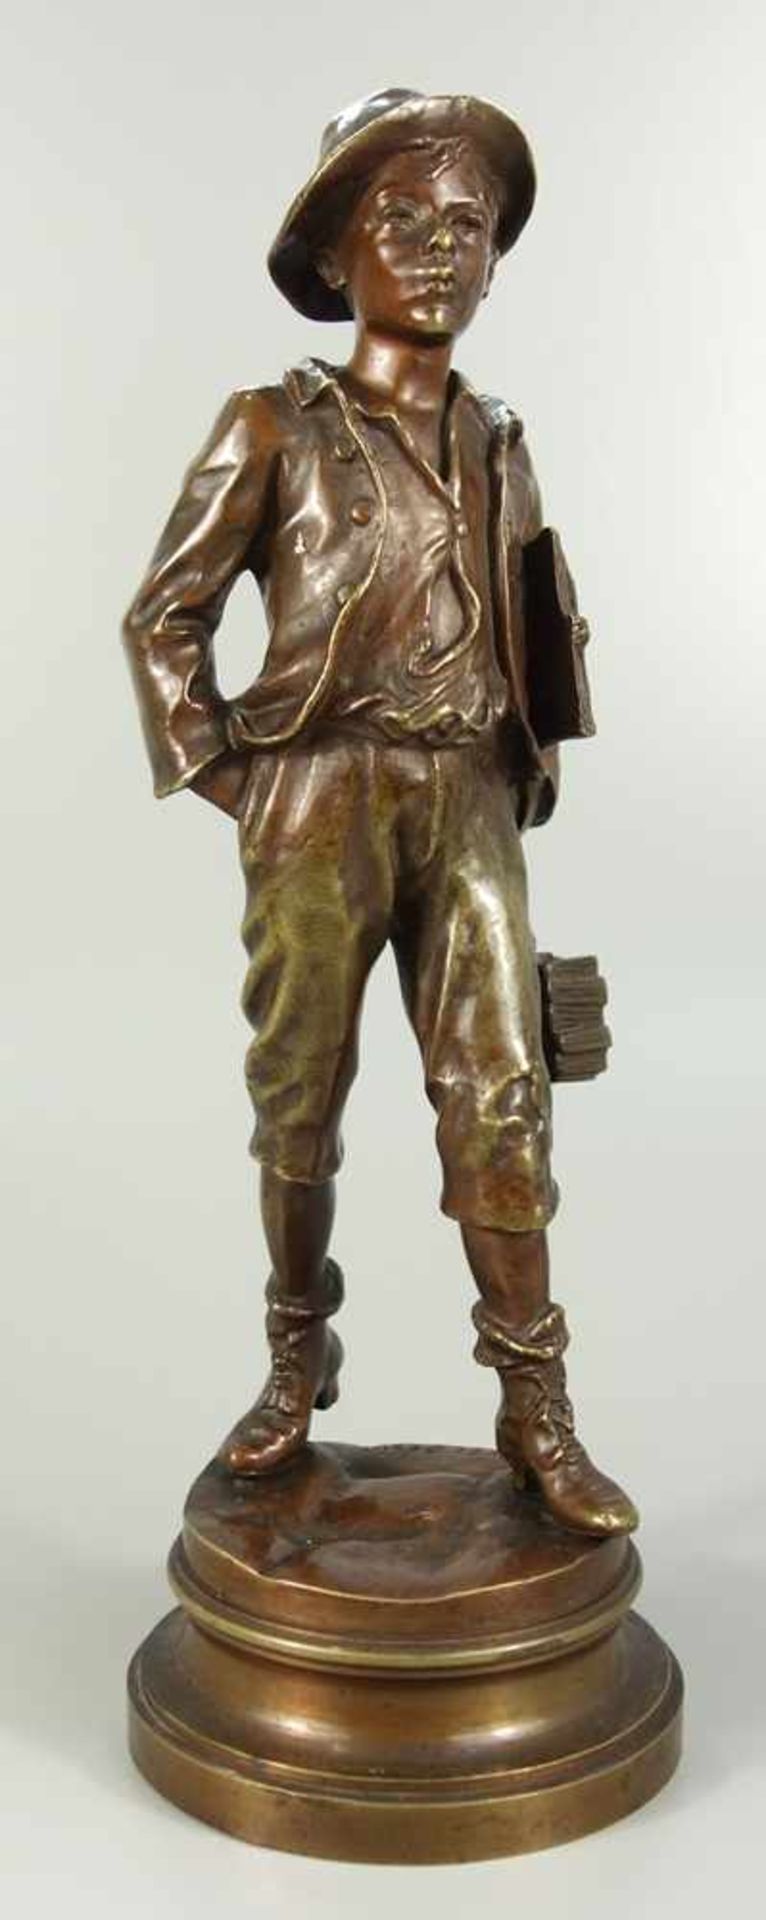 Schuljunge, Marcel Debut (1865-1933), Paris, Bronze, dunkelbraun patiniert, auf runder Plinthe